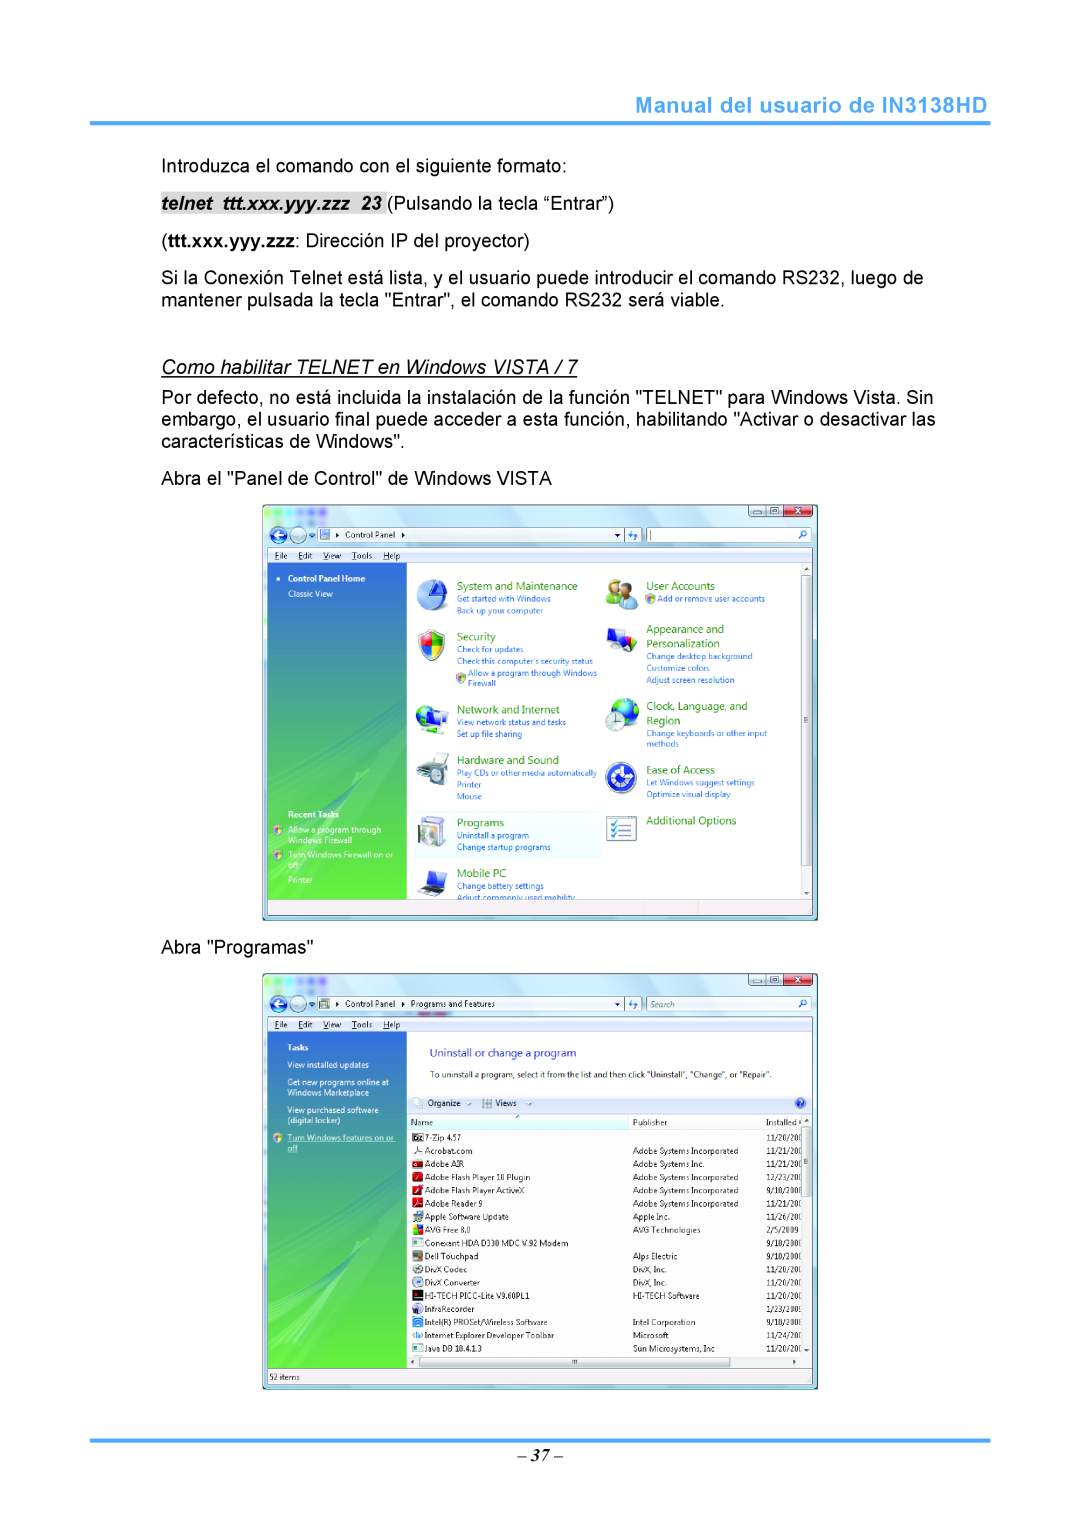 InFocus 3534324301 manual Manual del usuario de IN3138HD, Como habilitar TELNET en Windows VISTA 